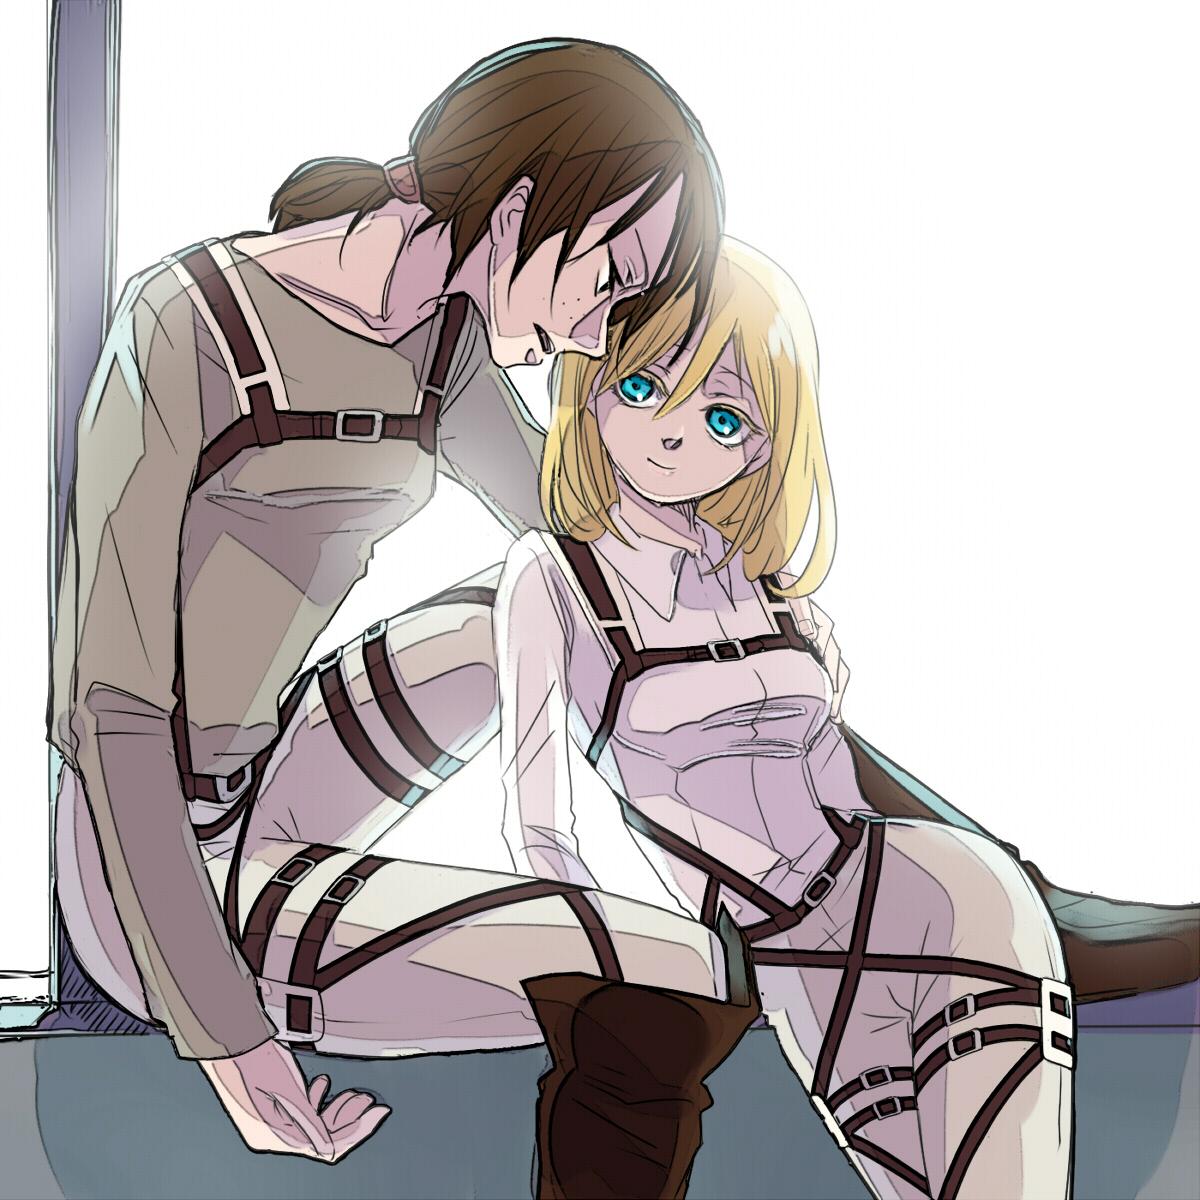 Armin christa and annie threesome hentai